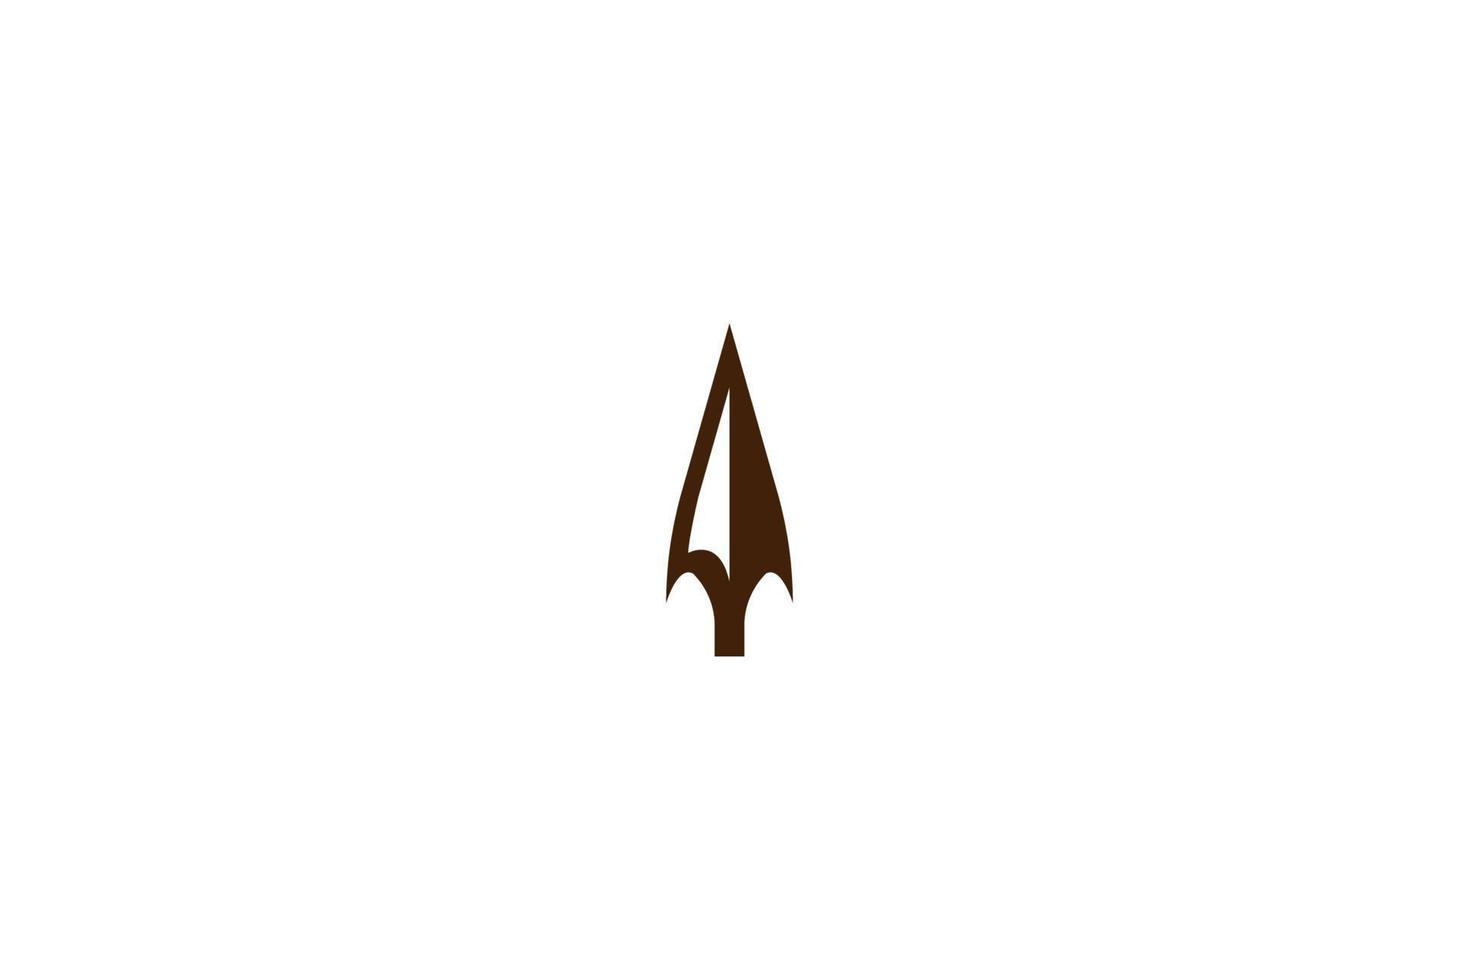 simple minimalista vintage retro rústico punta de flecha lanza caza hipster logo diseño vector